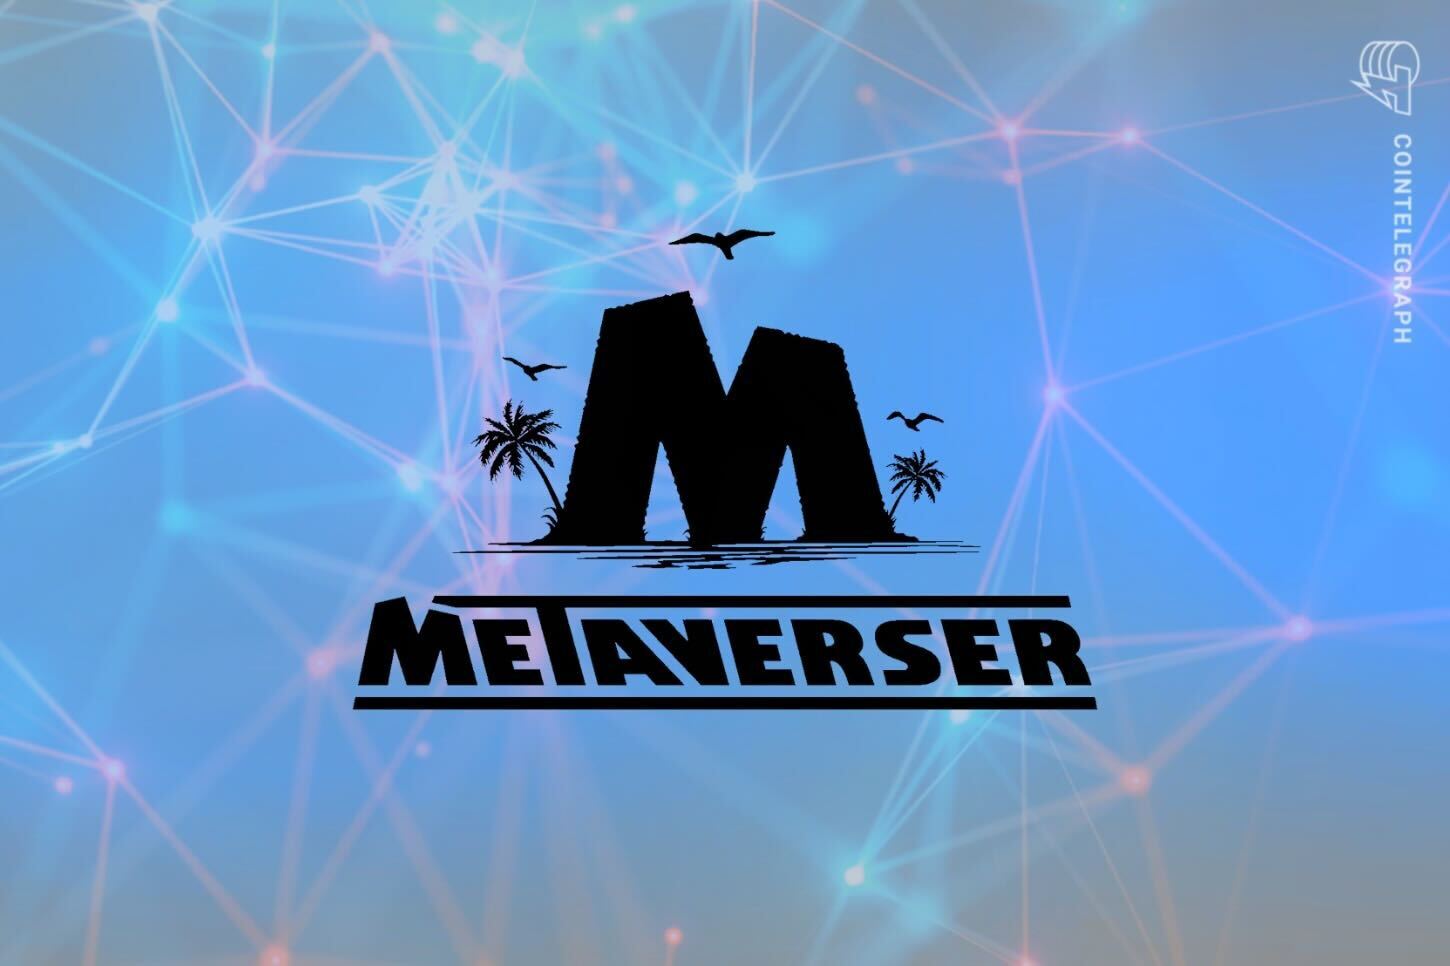 توكن $MTVT من Metaverser سيحلق إلى أعلى مستوى جديد على الإطلاق مع أول عملية حرق للتوكنات